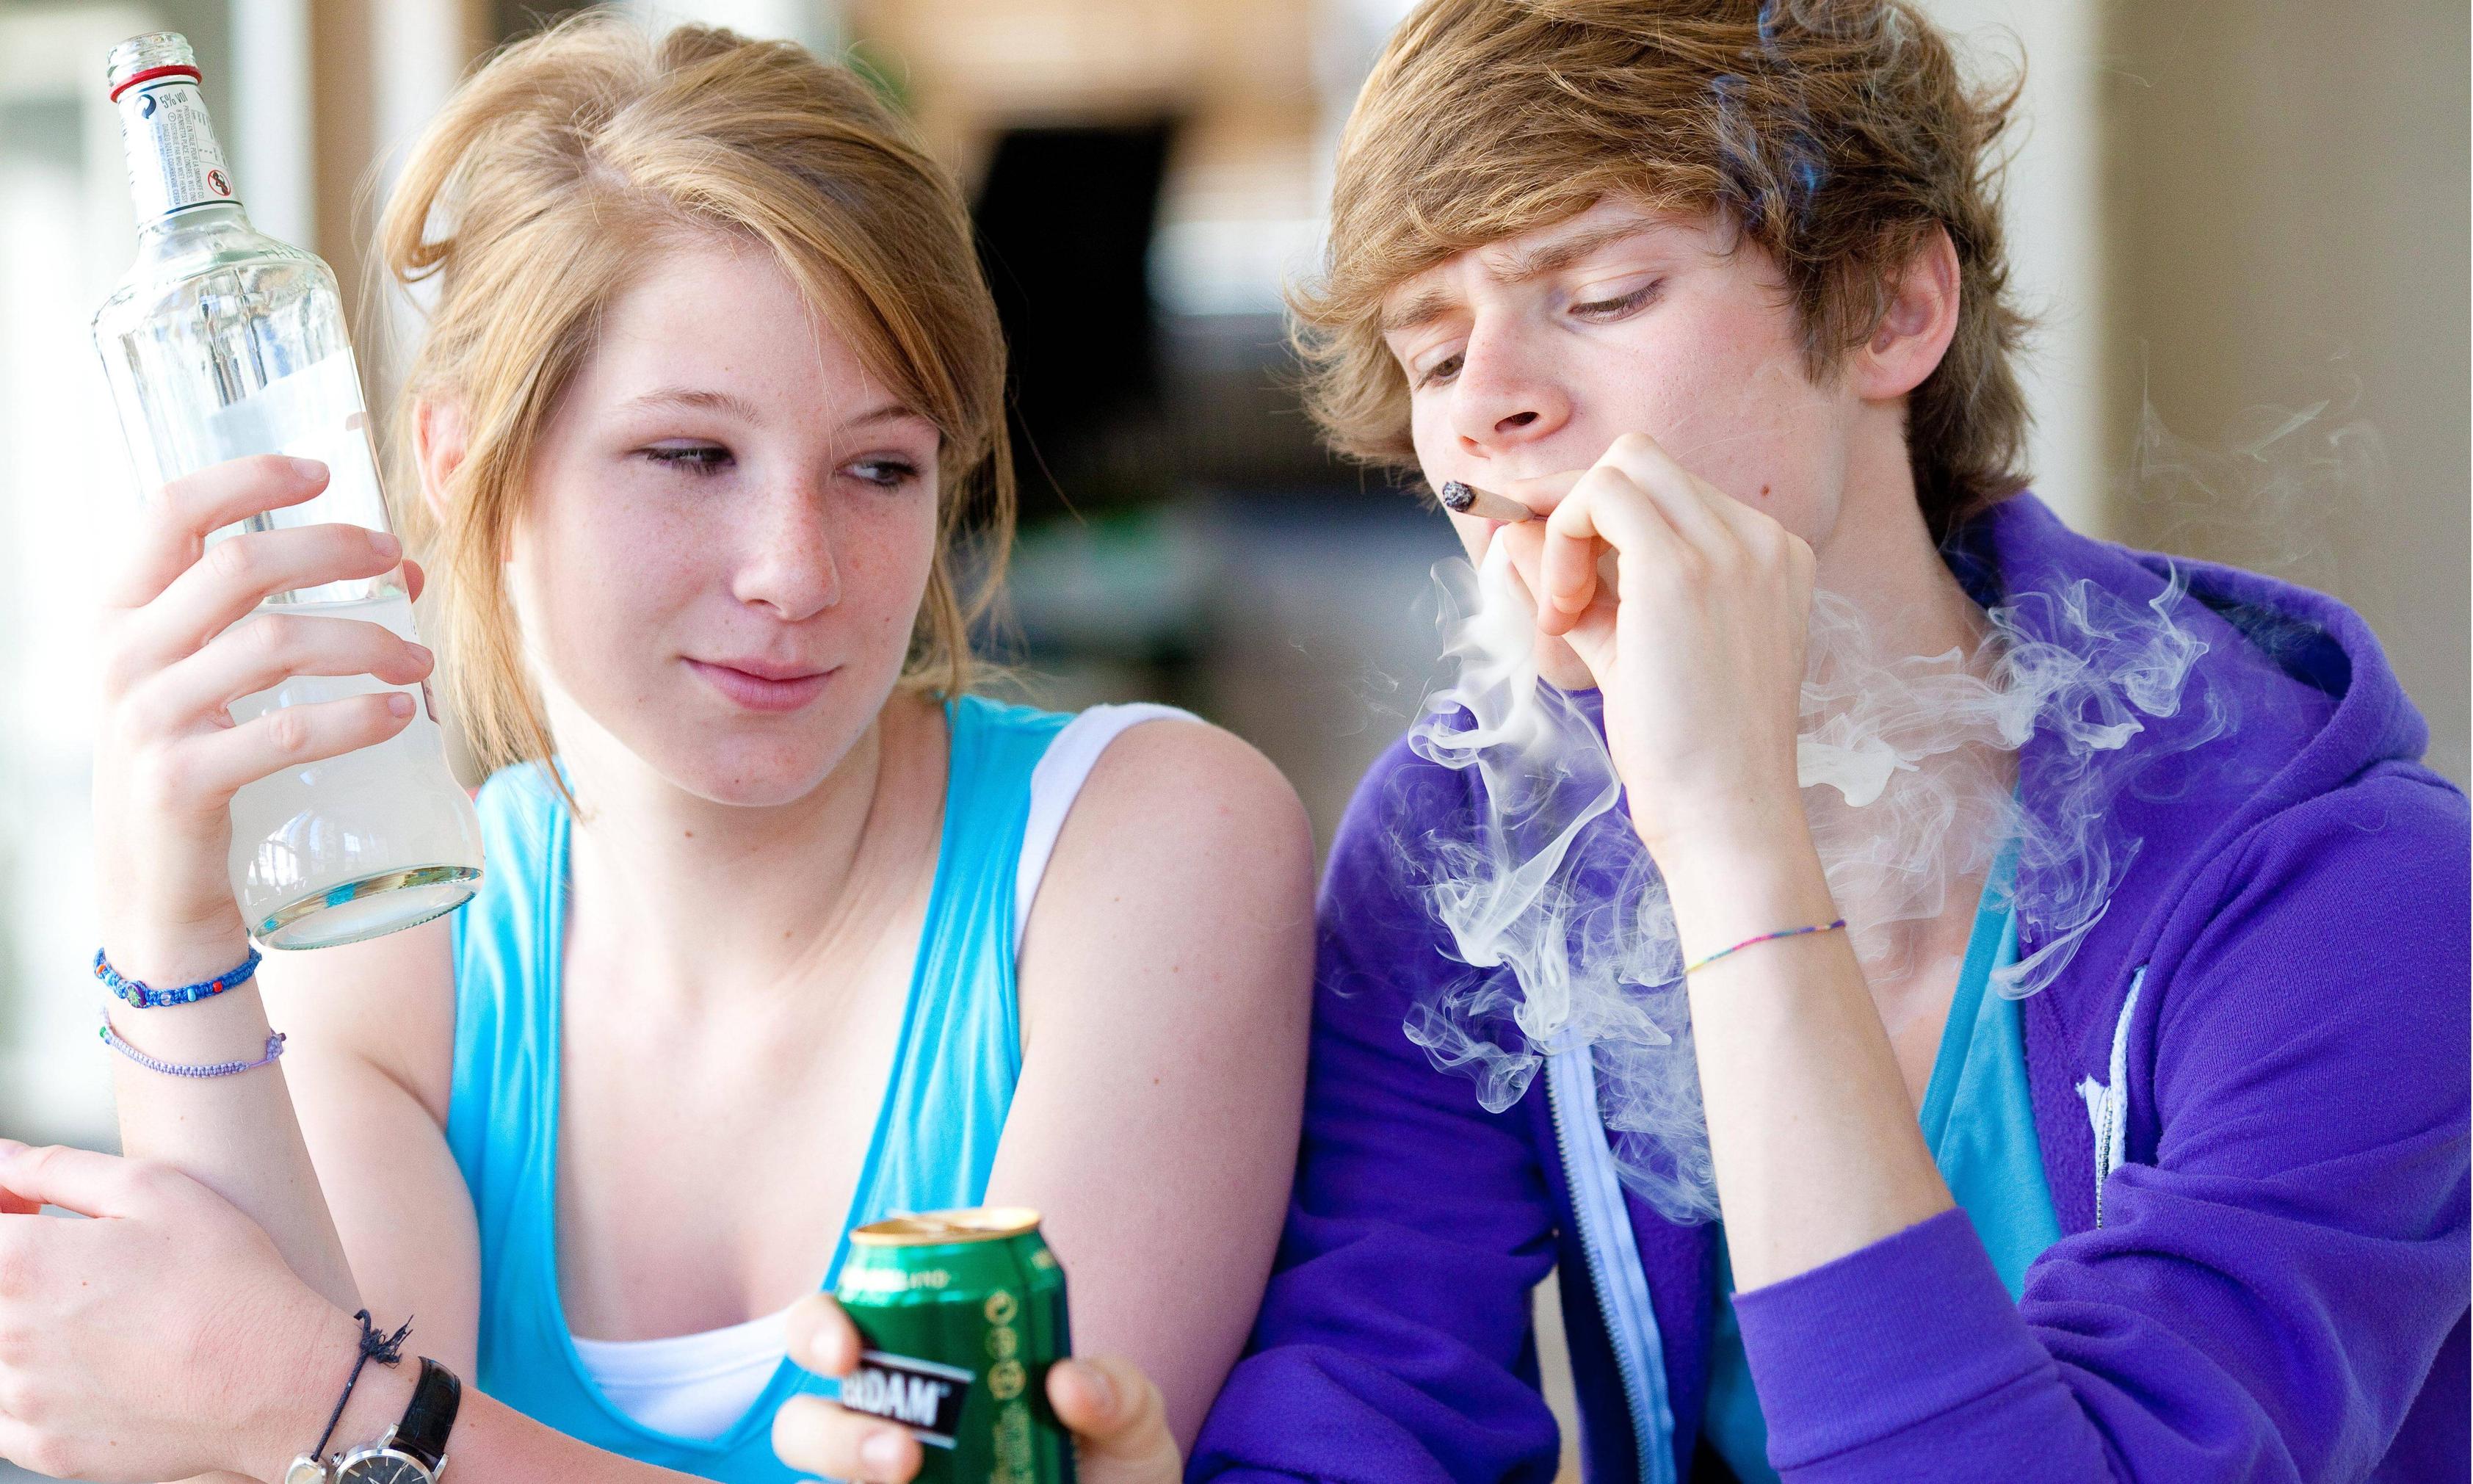 Tot mai mulţi tineri beau şi fumează. OMS se arată îngrijorat